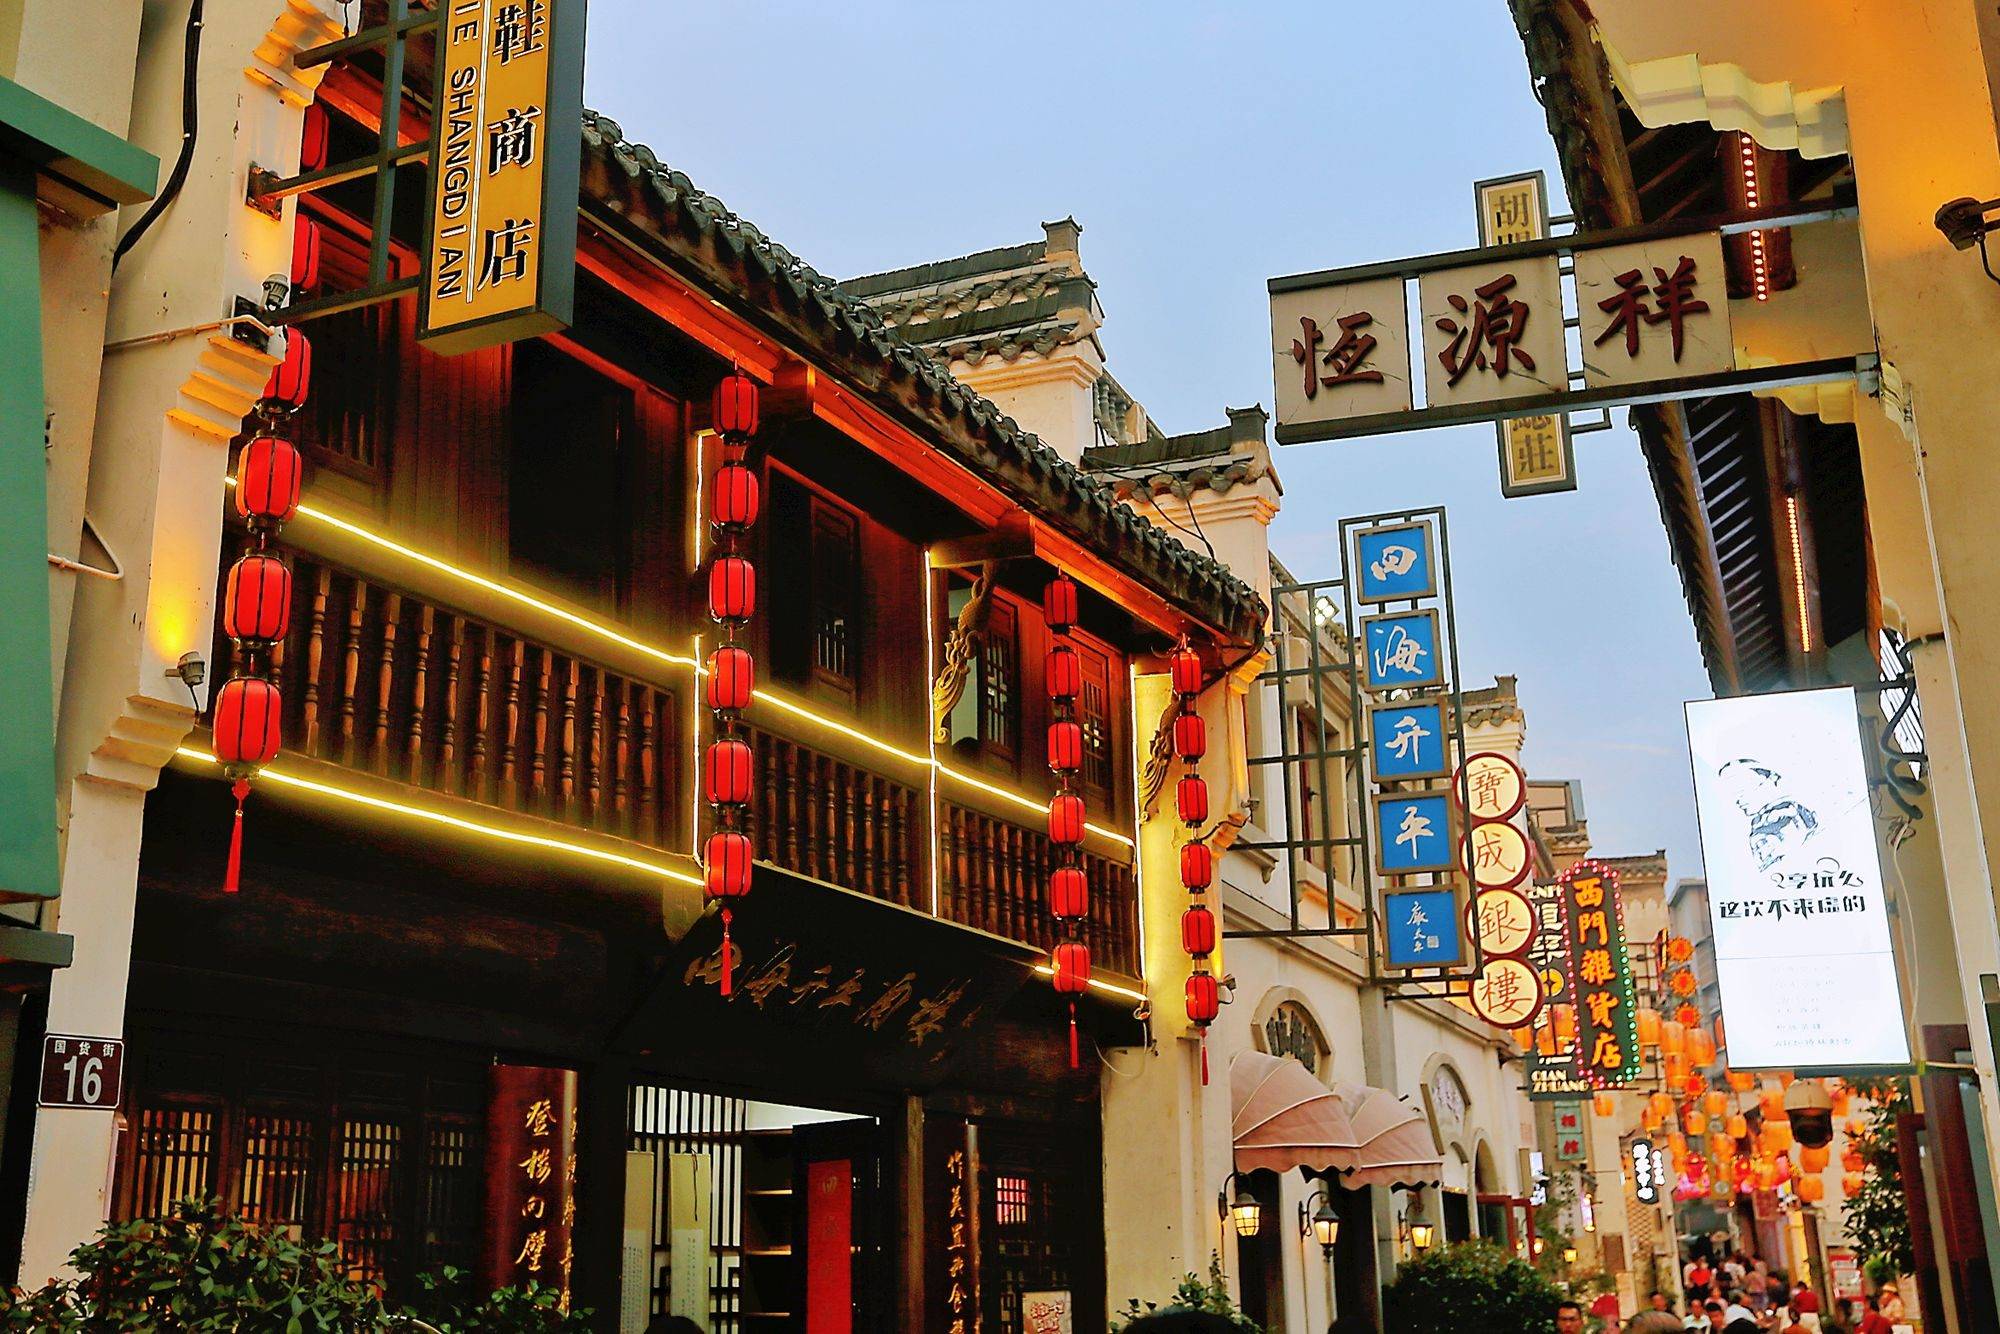 安庆倒扒狮步行街,拥有400多年历史,曾是安徽第一商业街